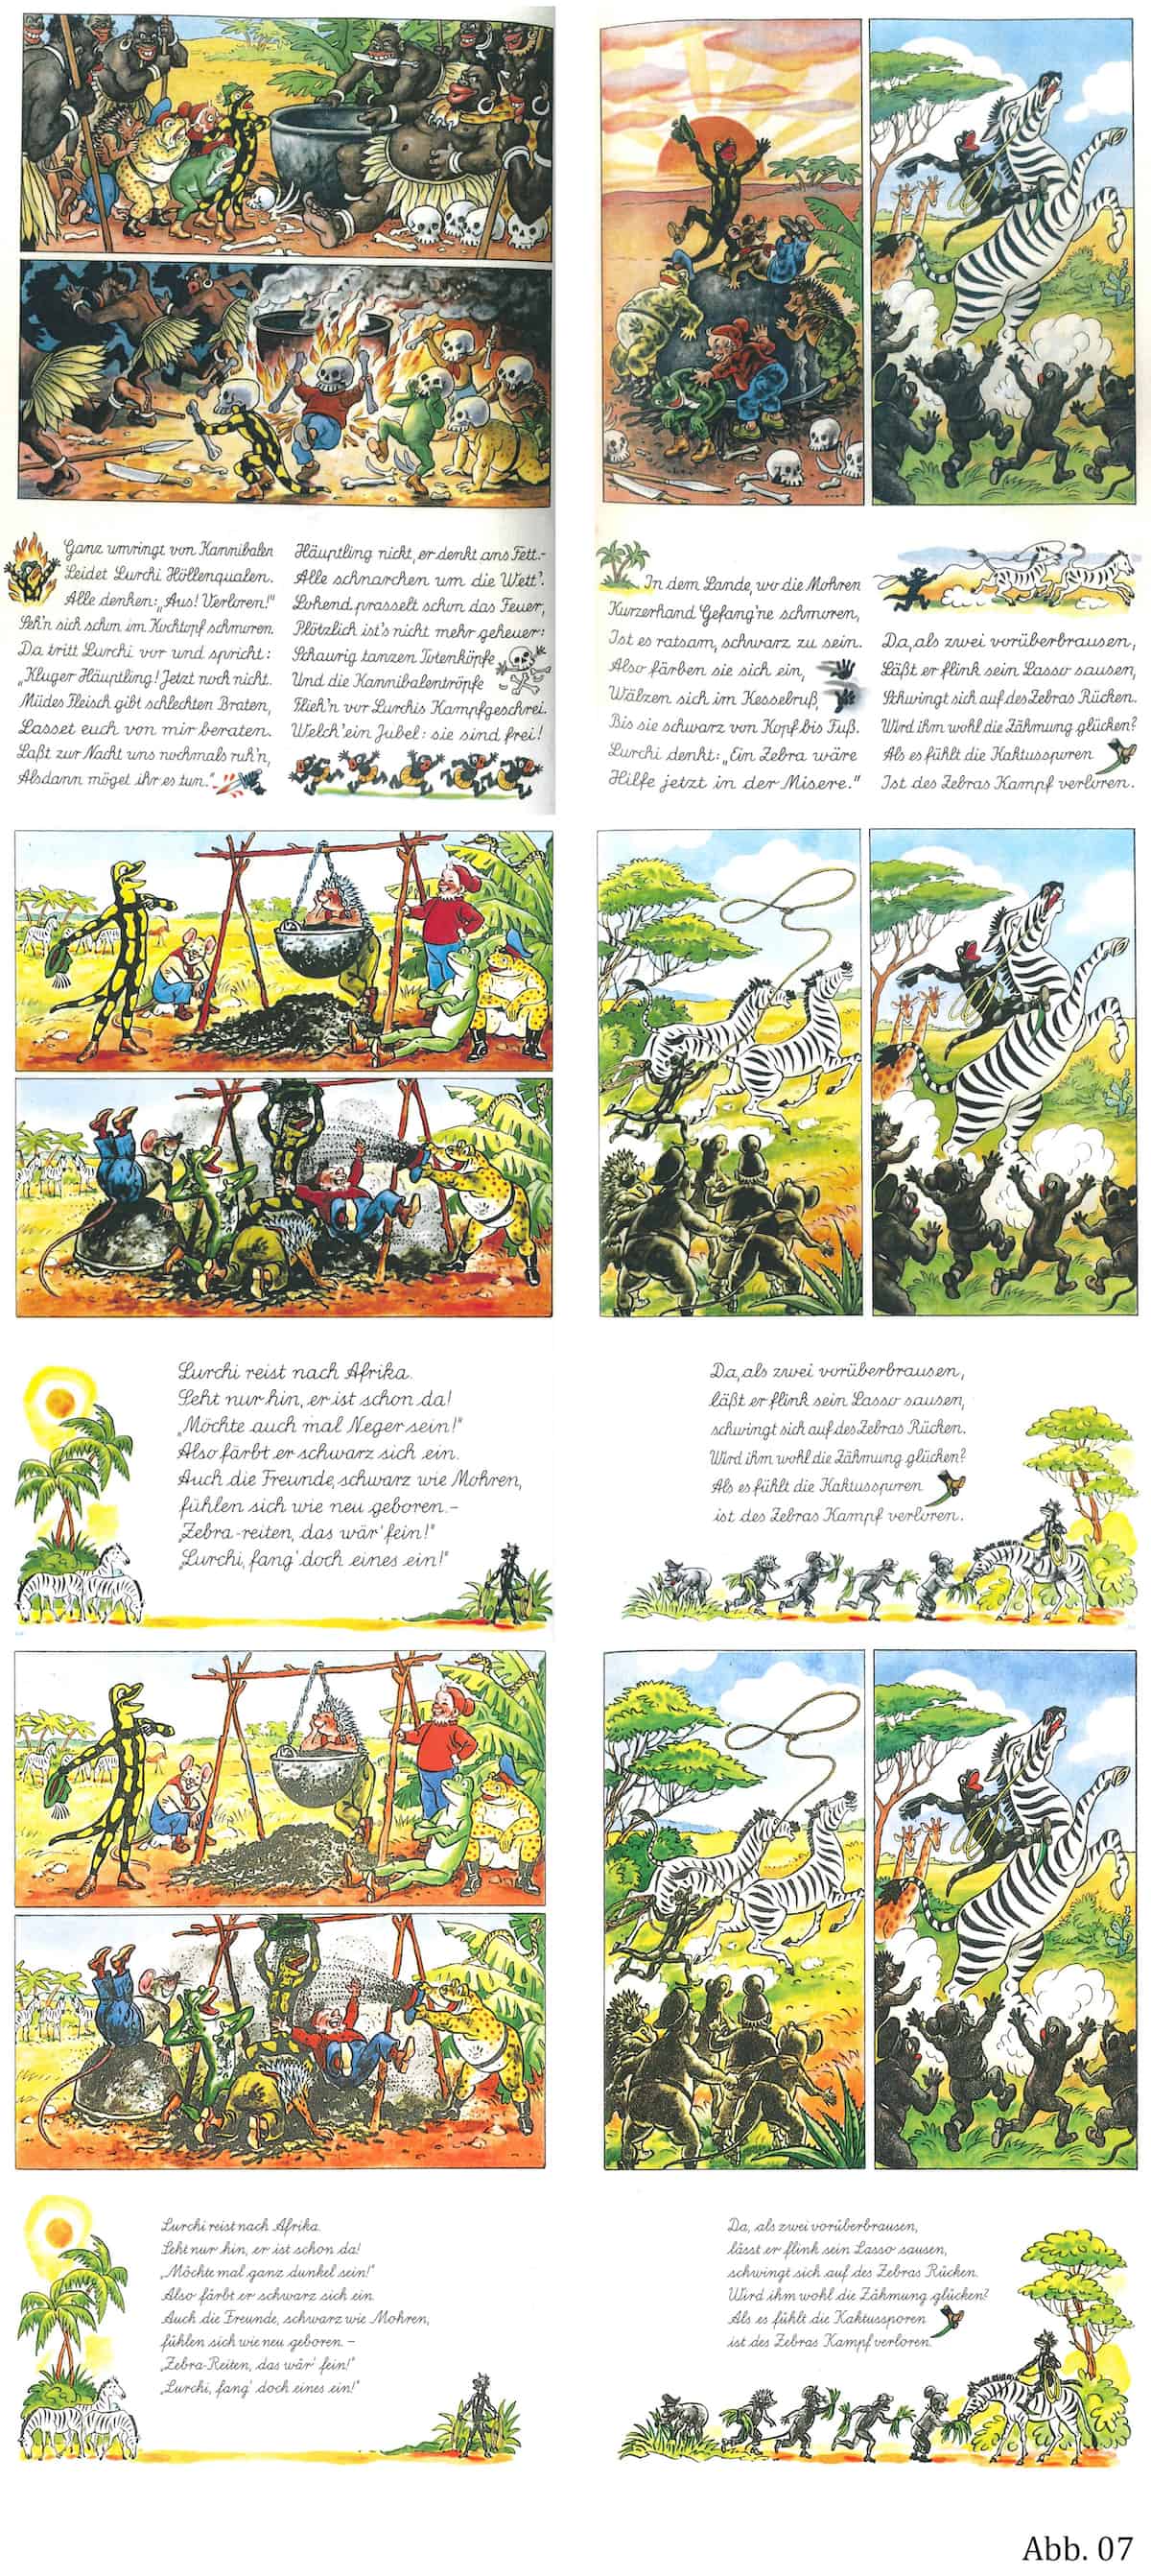 Abb. 7: Zensurgeschichte von den 'wilden' Kannibalen bis nach Afrika (Böhm 1984, S. 8; LI alt, S. 68f.; L1, S. 68f.)